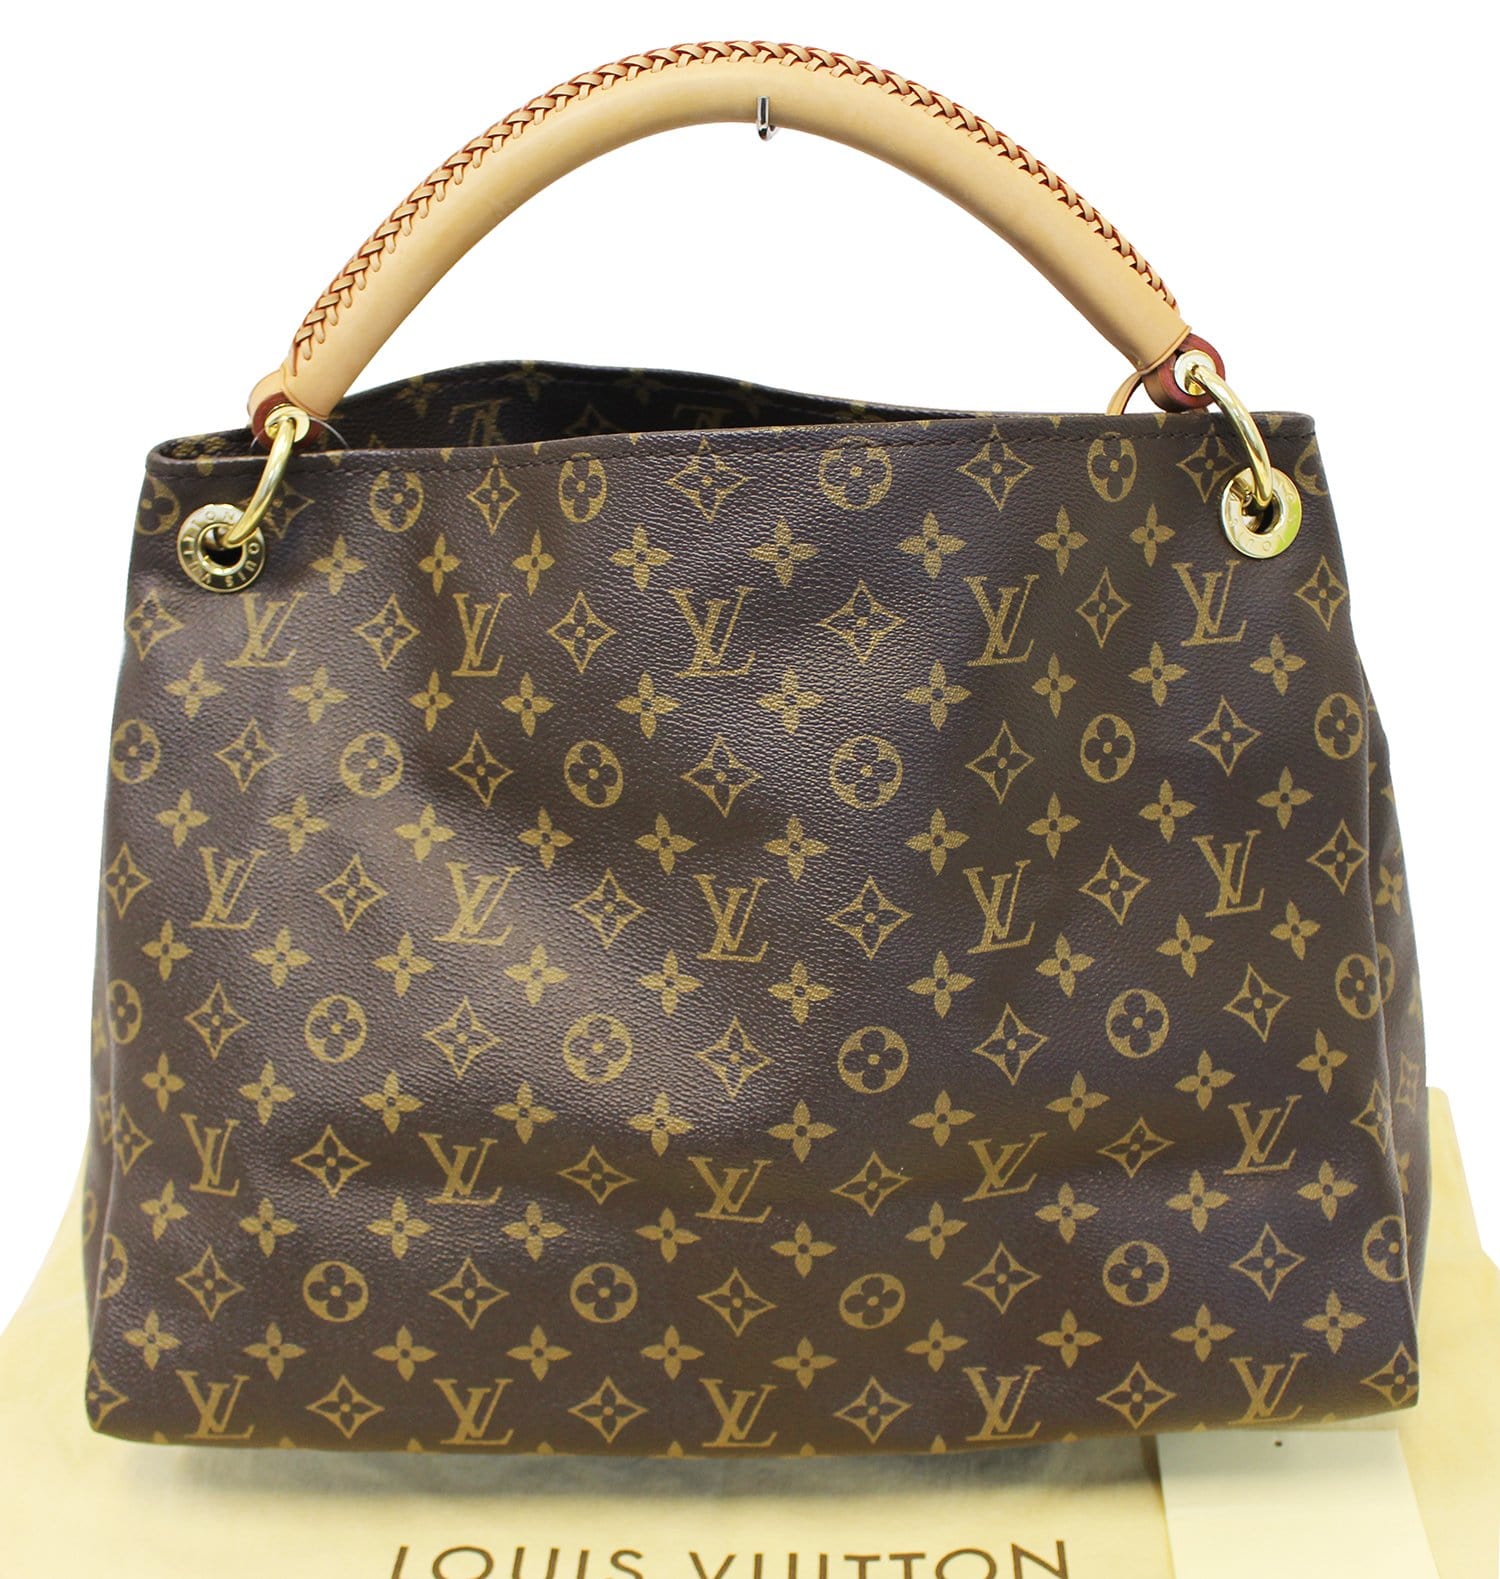 Louis Vuitton Artsy Big Bag value